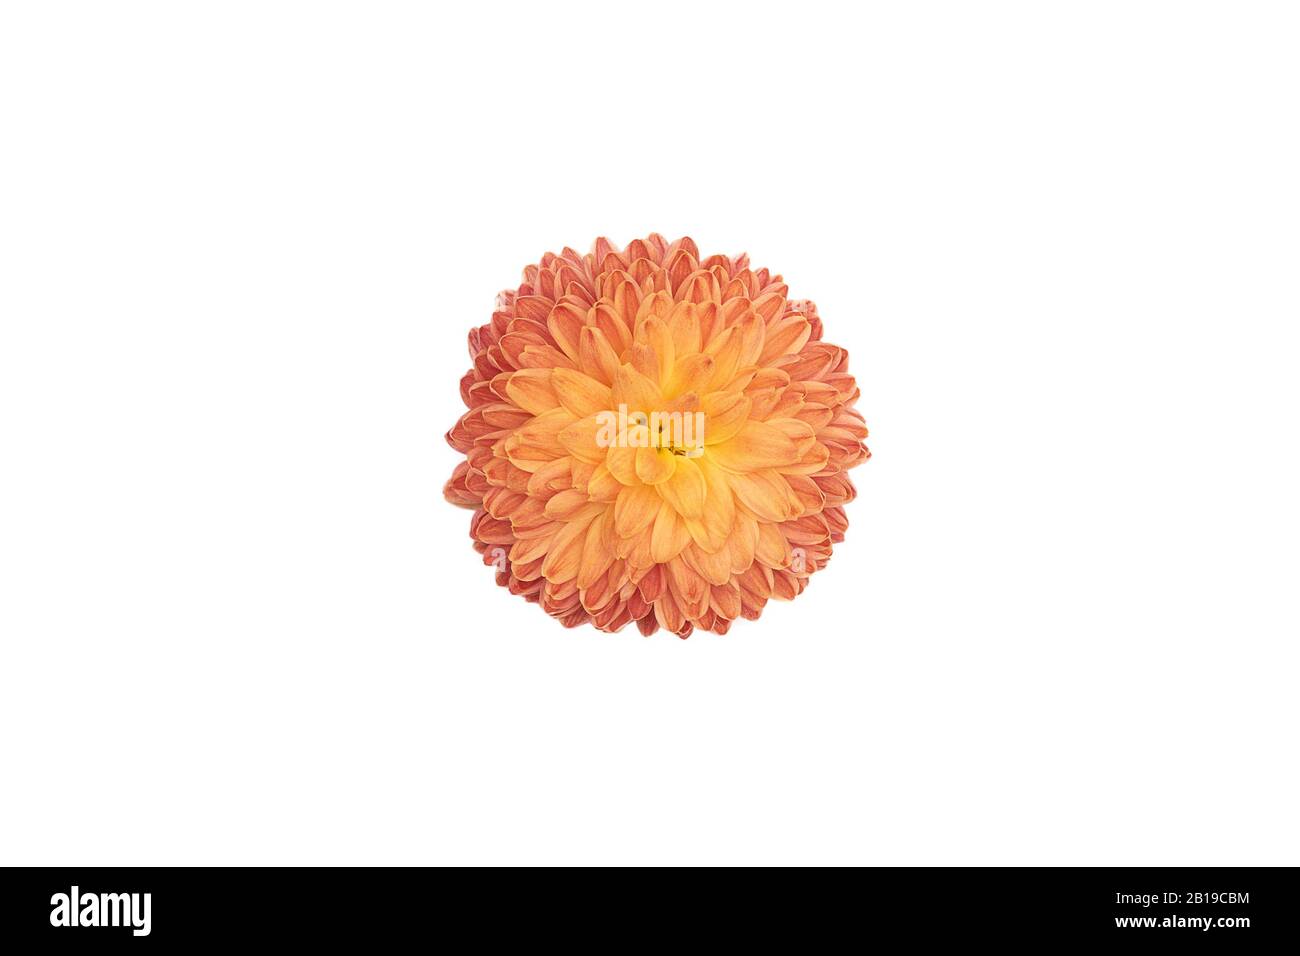 Orange flower flower isolated on white background. Stock Photo